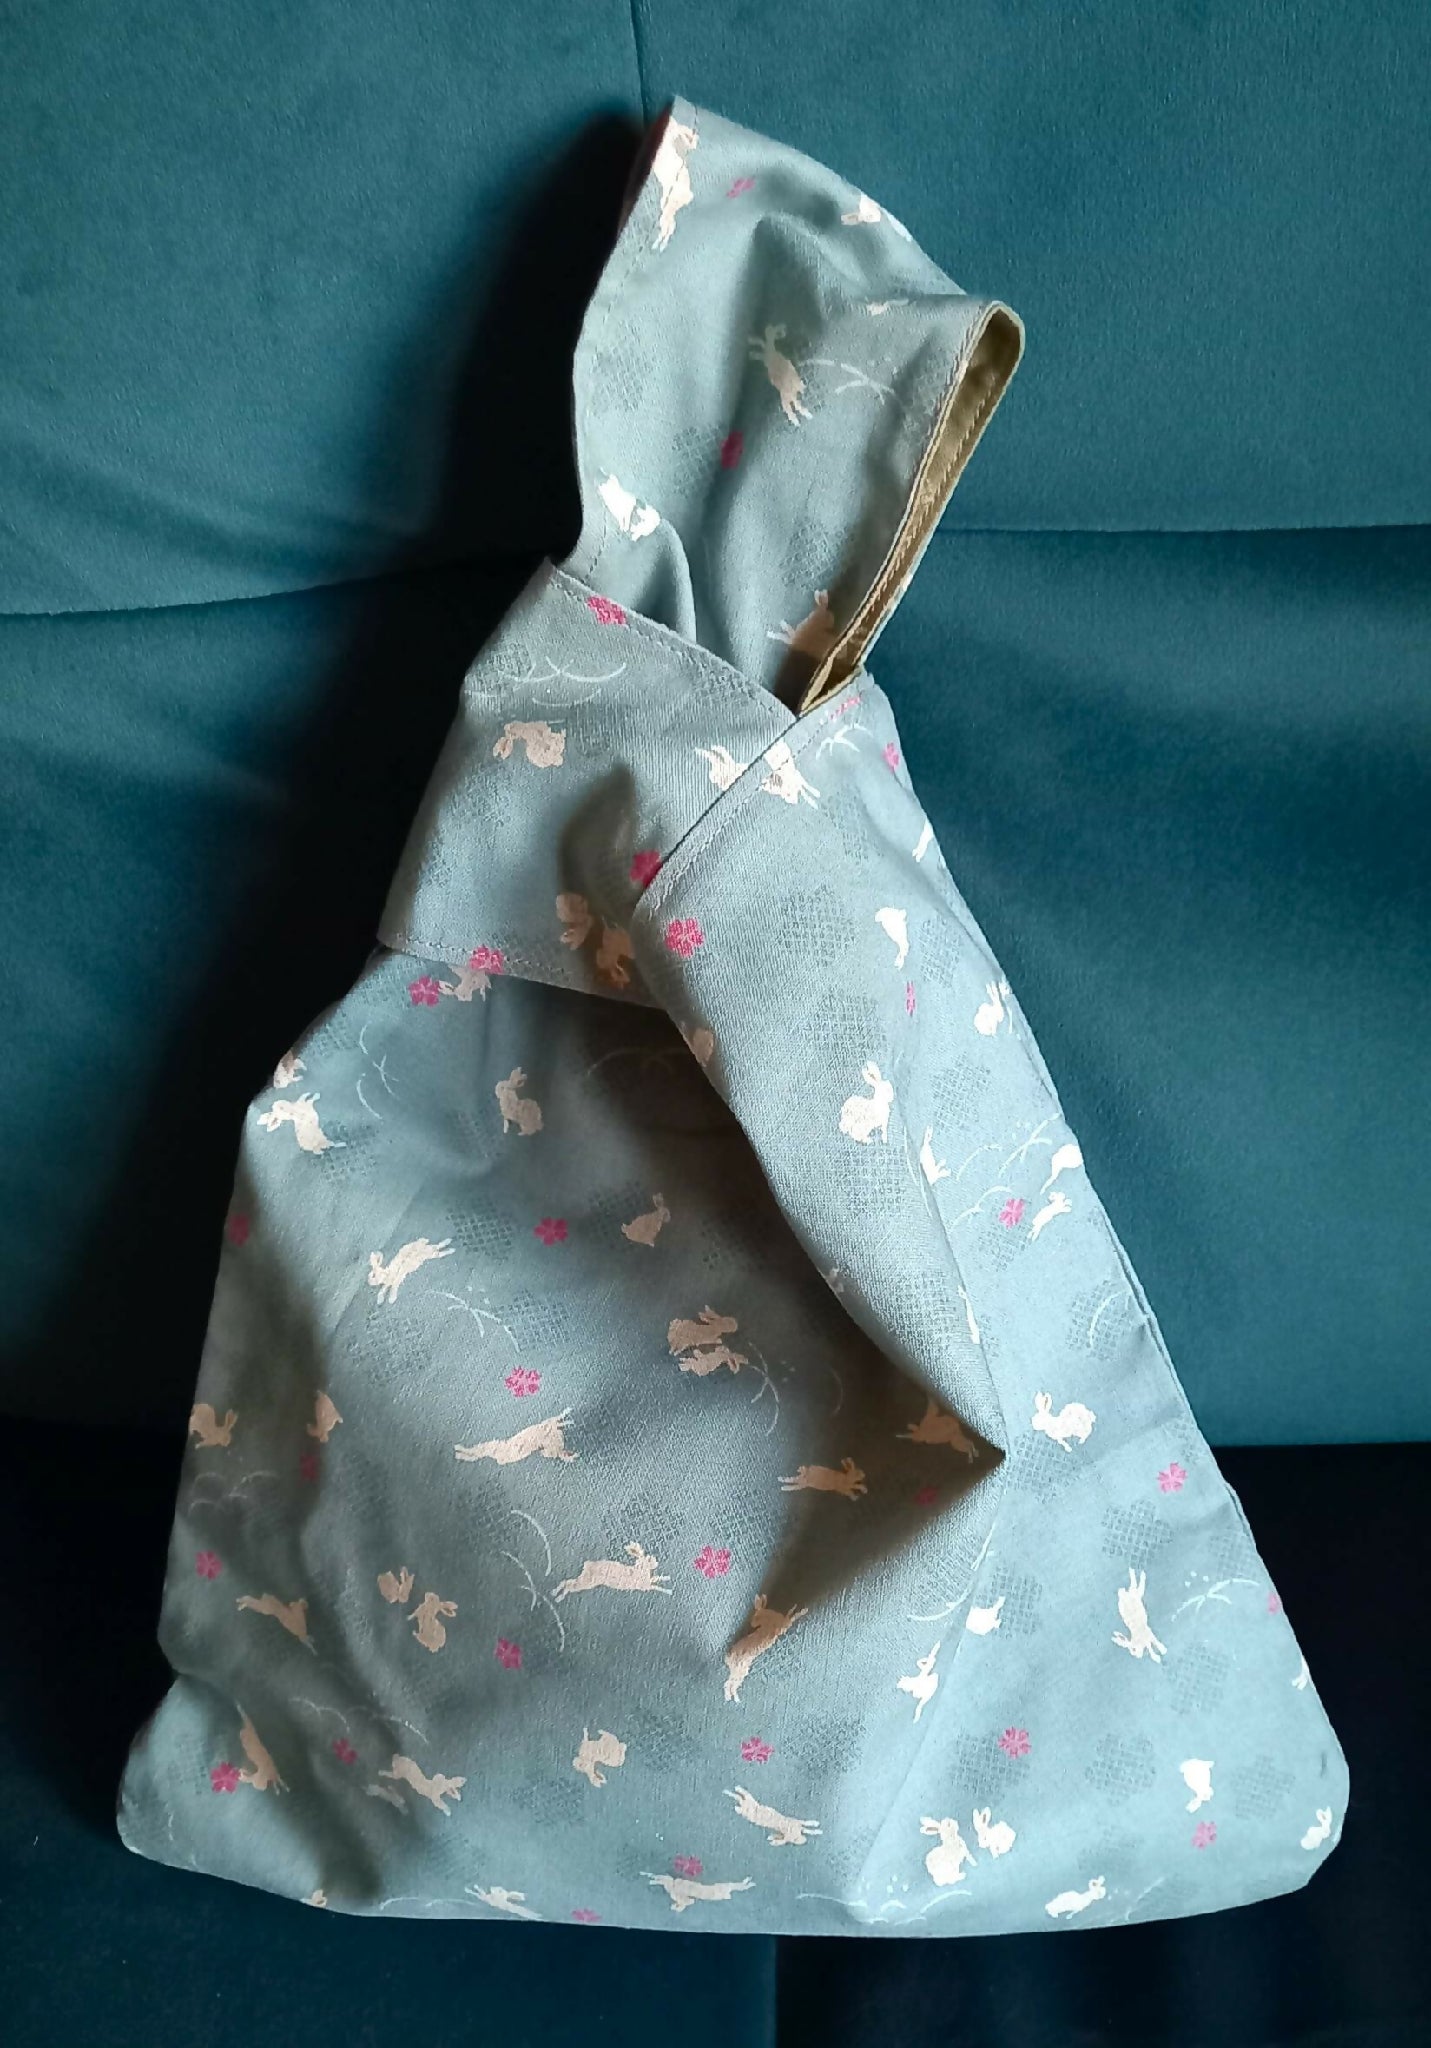 Japanese Knot Bag Medium - Rabbits